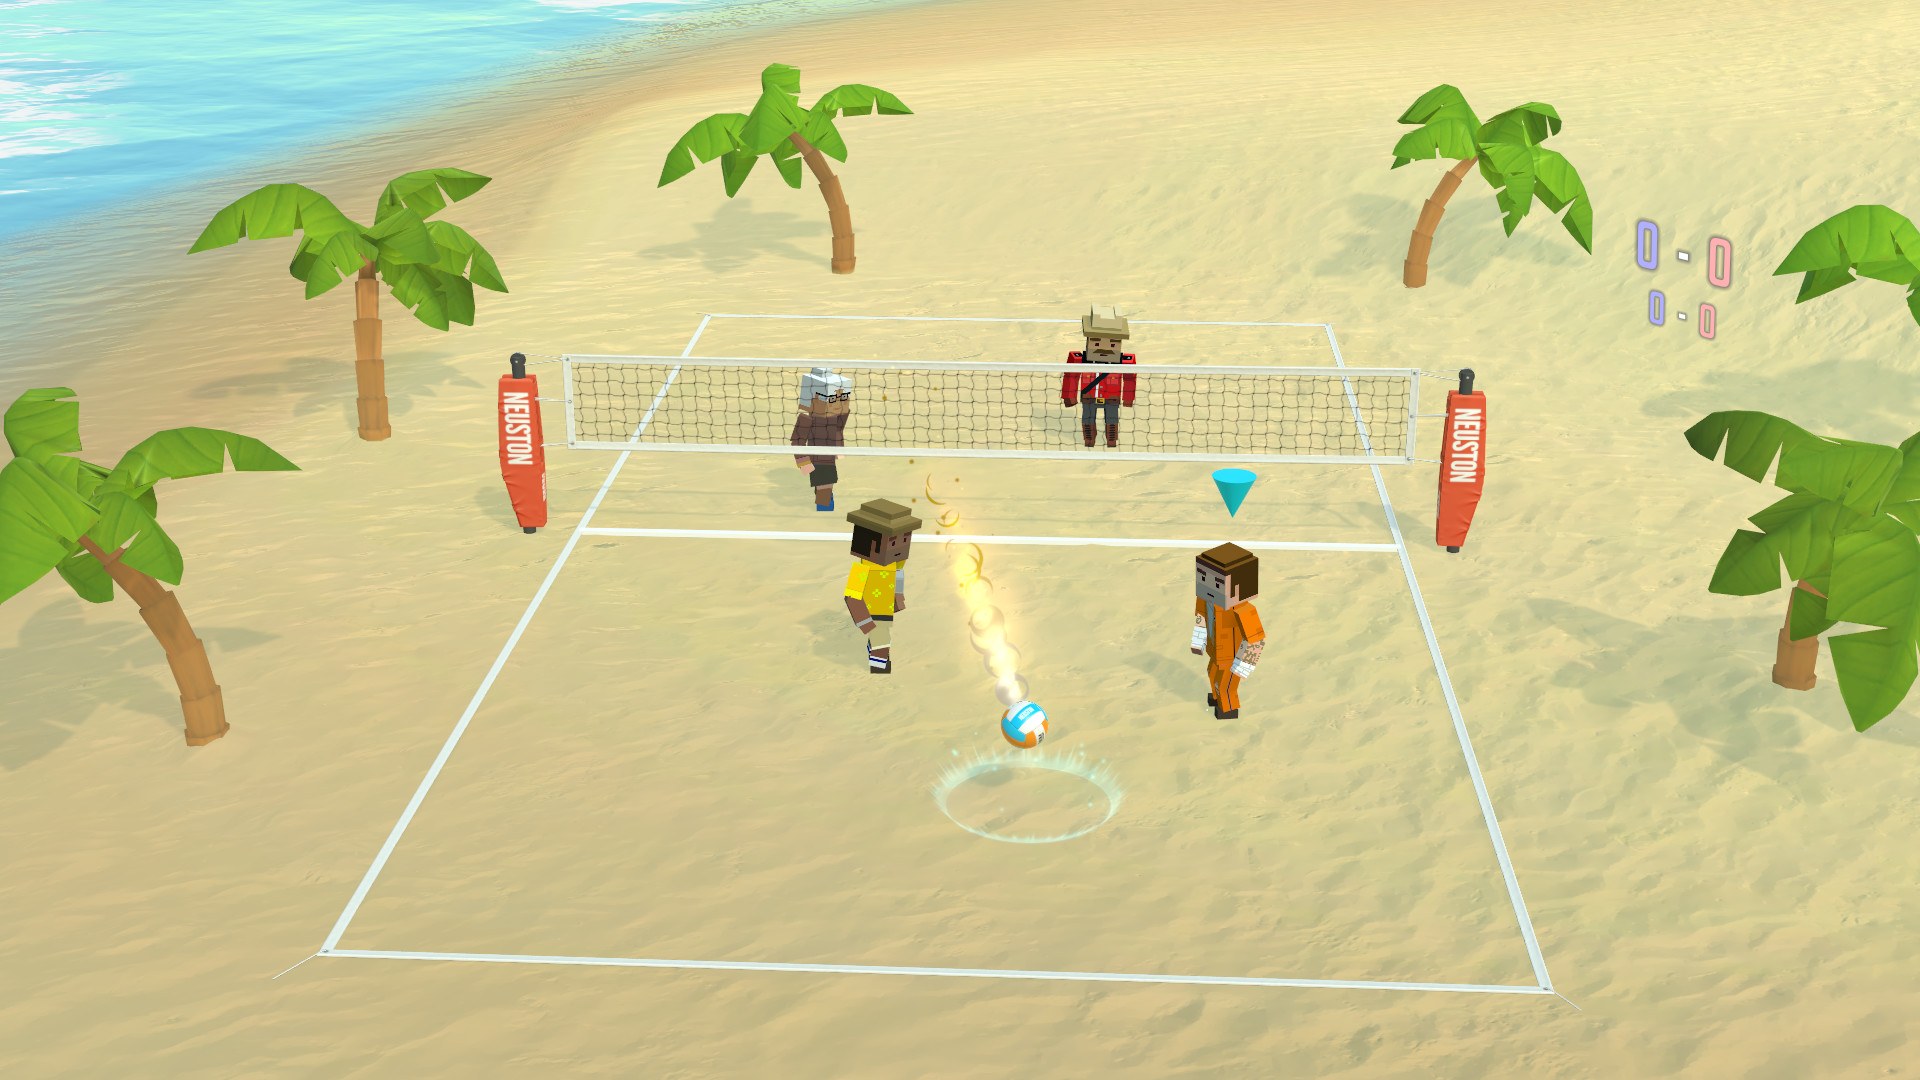 Упрощенная версия игры волейбол